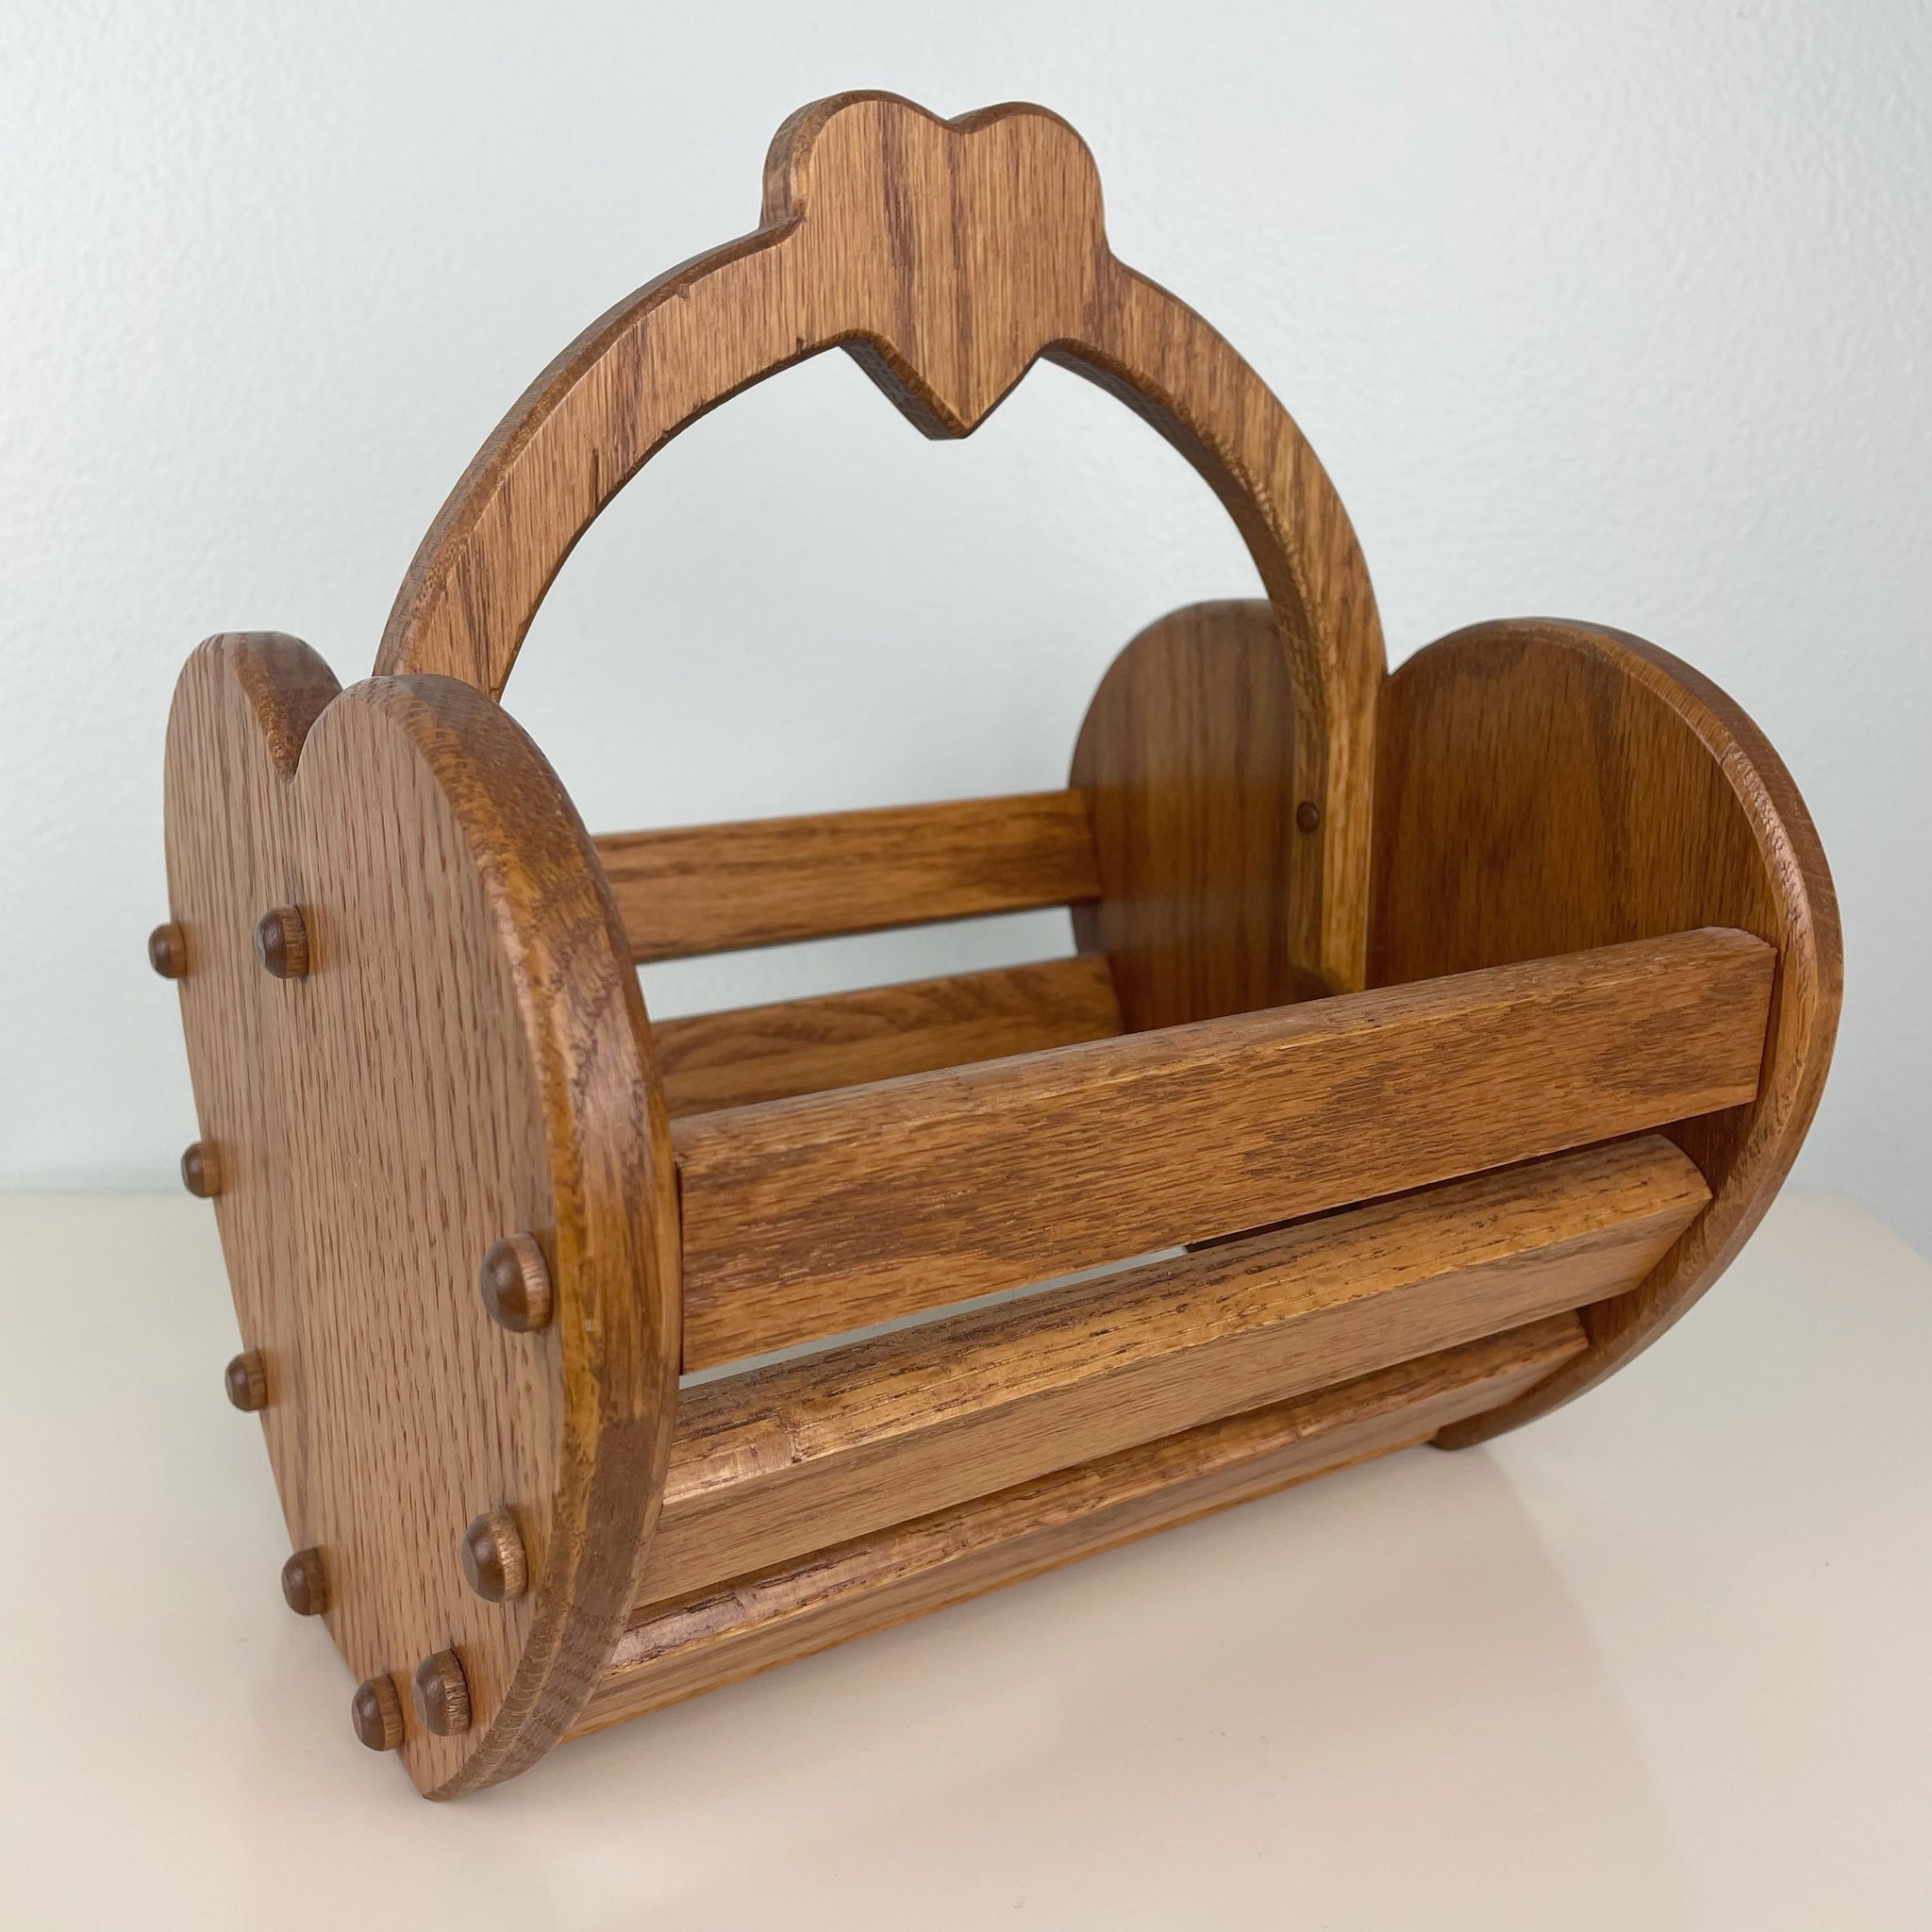 wooden heart basket – old soul goods